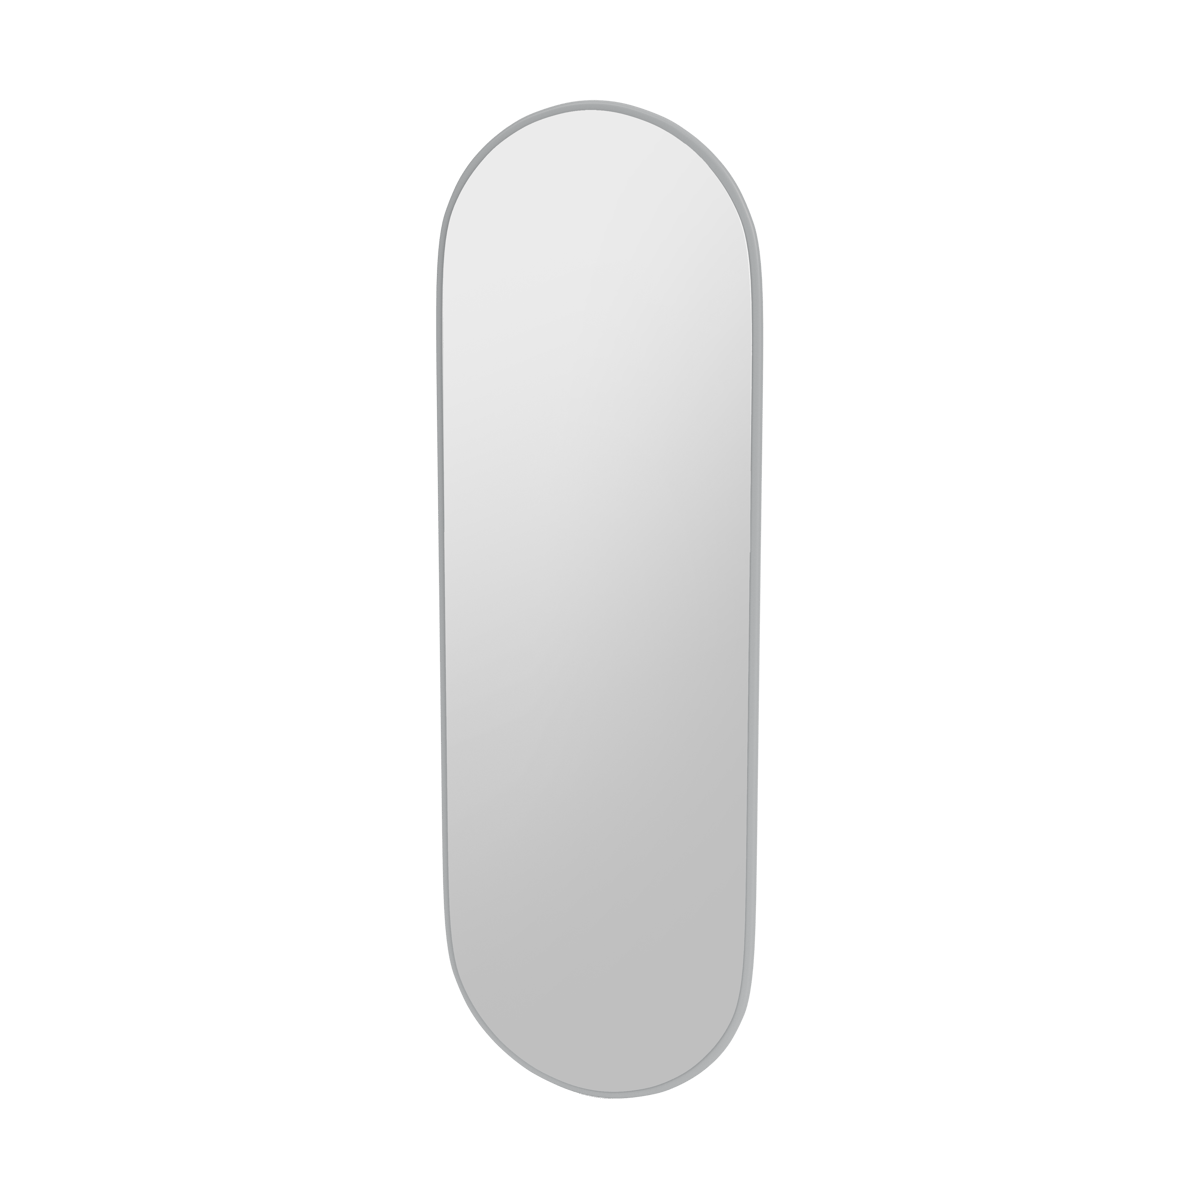 Montana FIGUUR Mirror Spiegel - SP824R Fjord